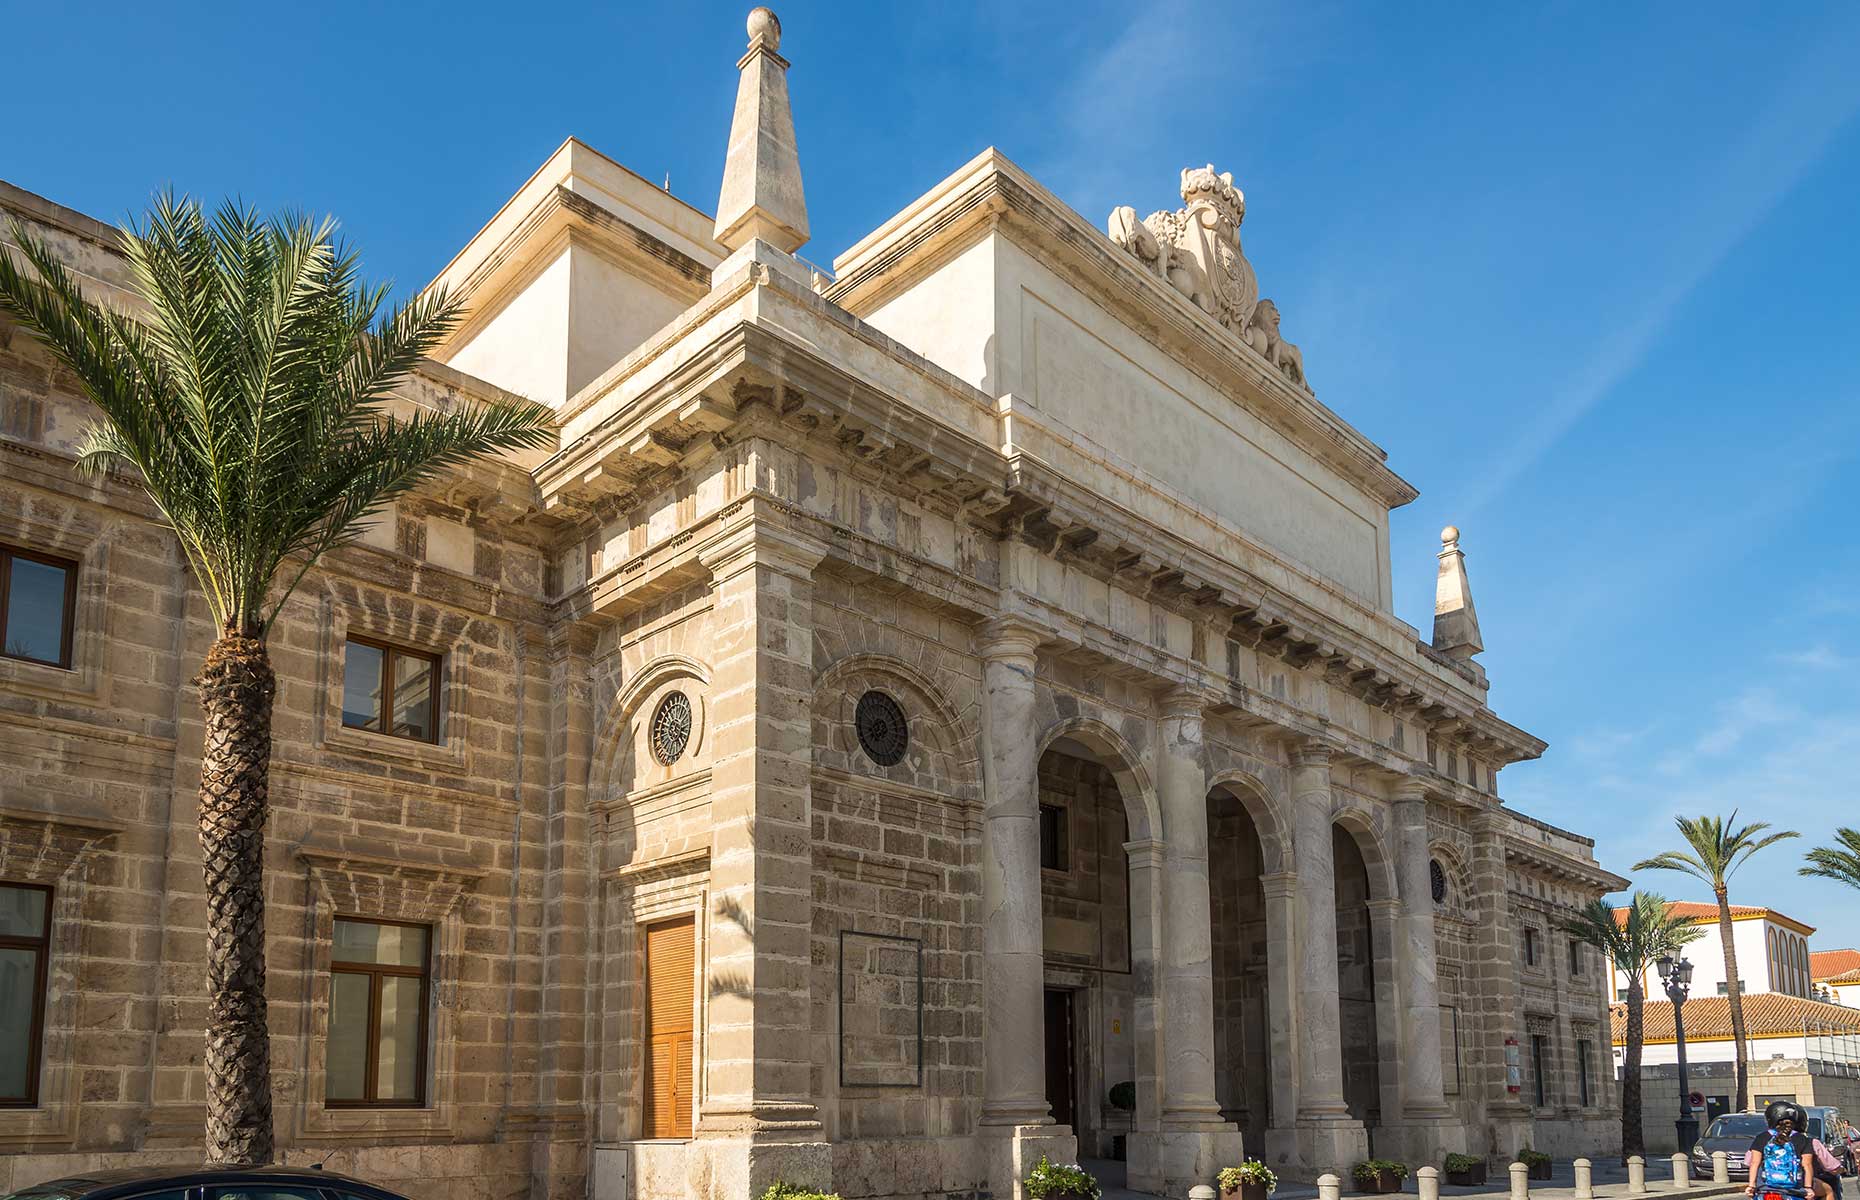 Cultural Museum of Cadiz in Spain